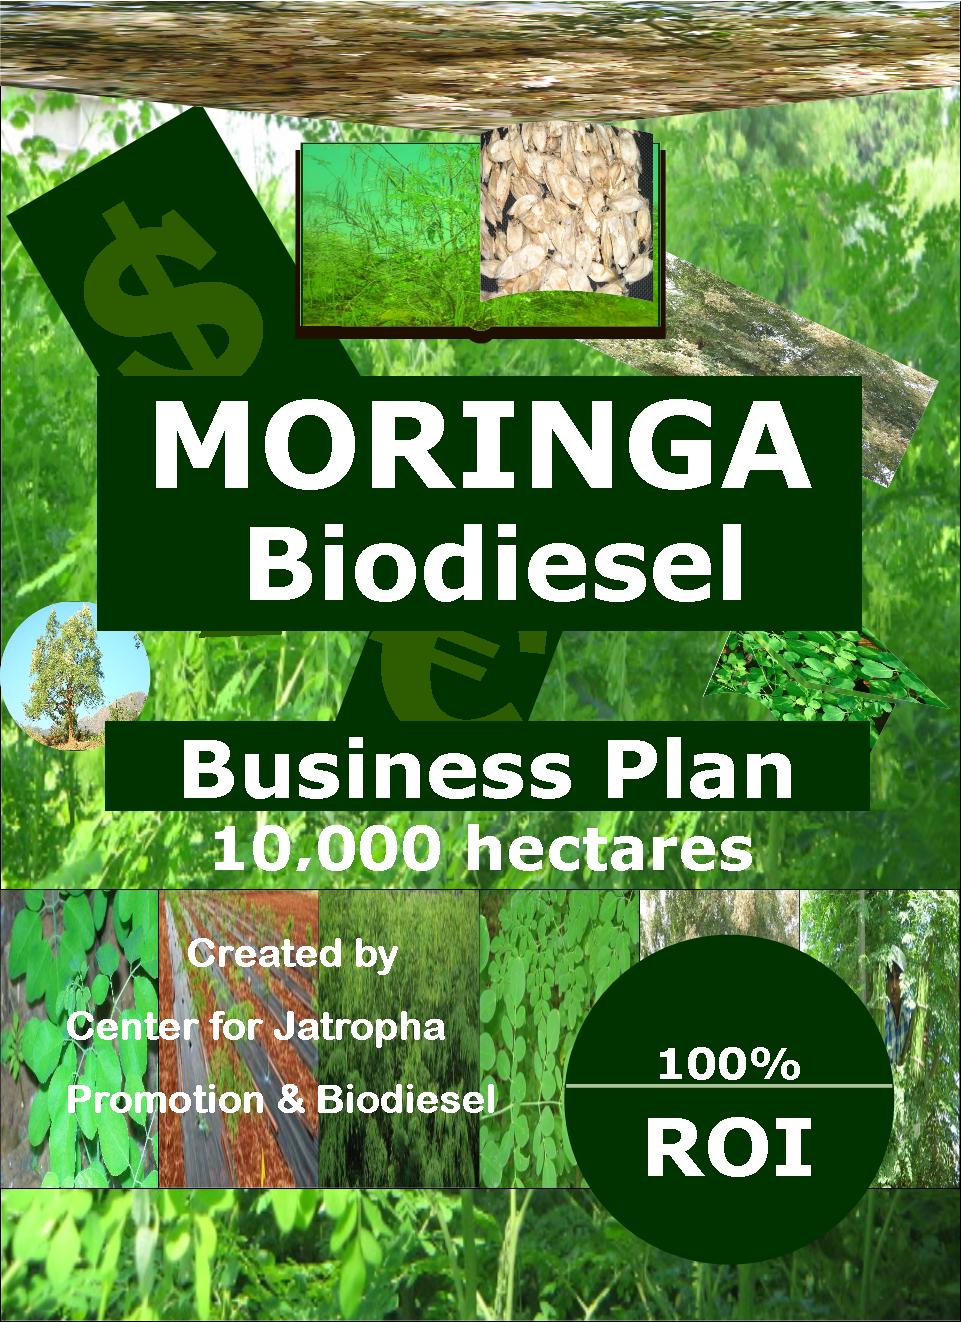 Moringa biodiesel business plan 10 k